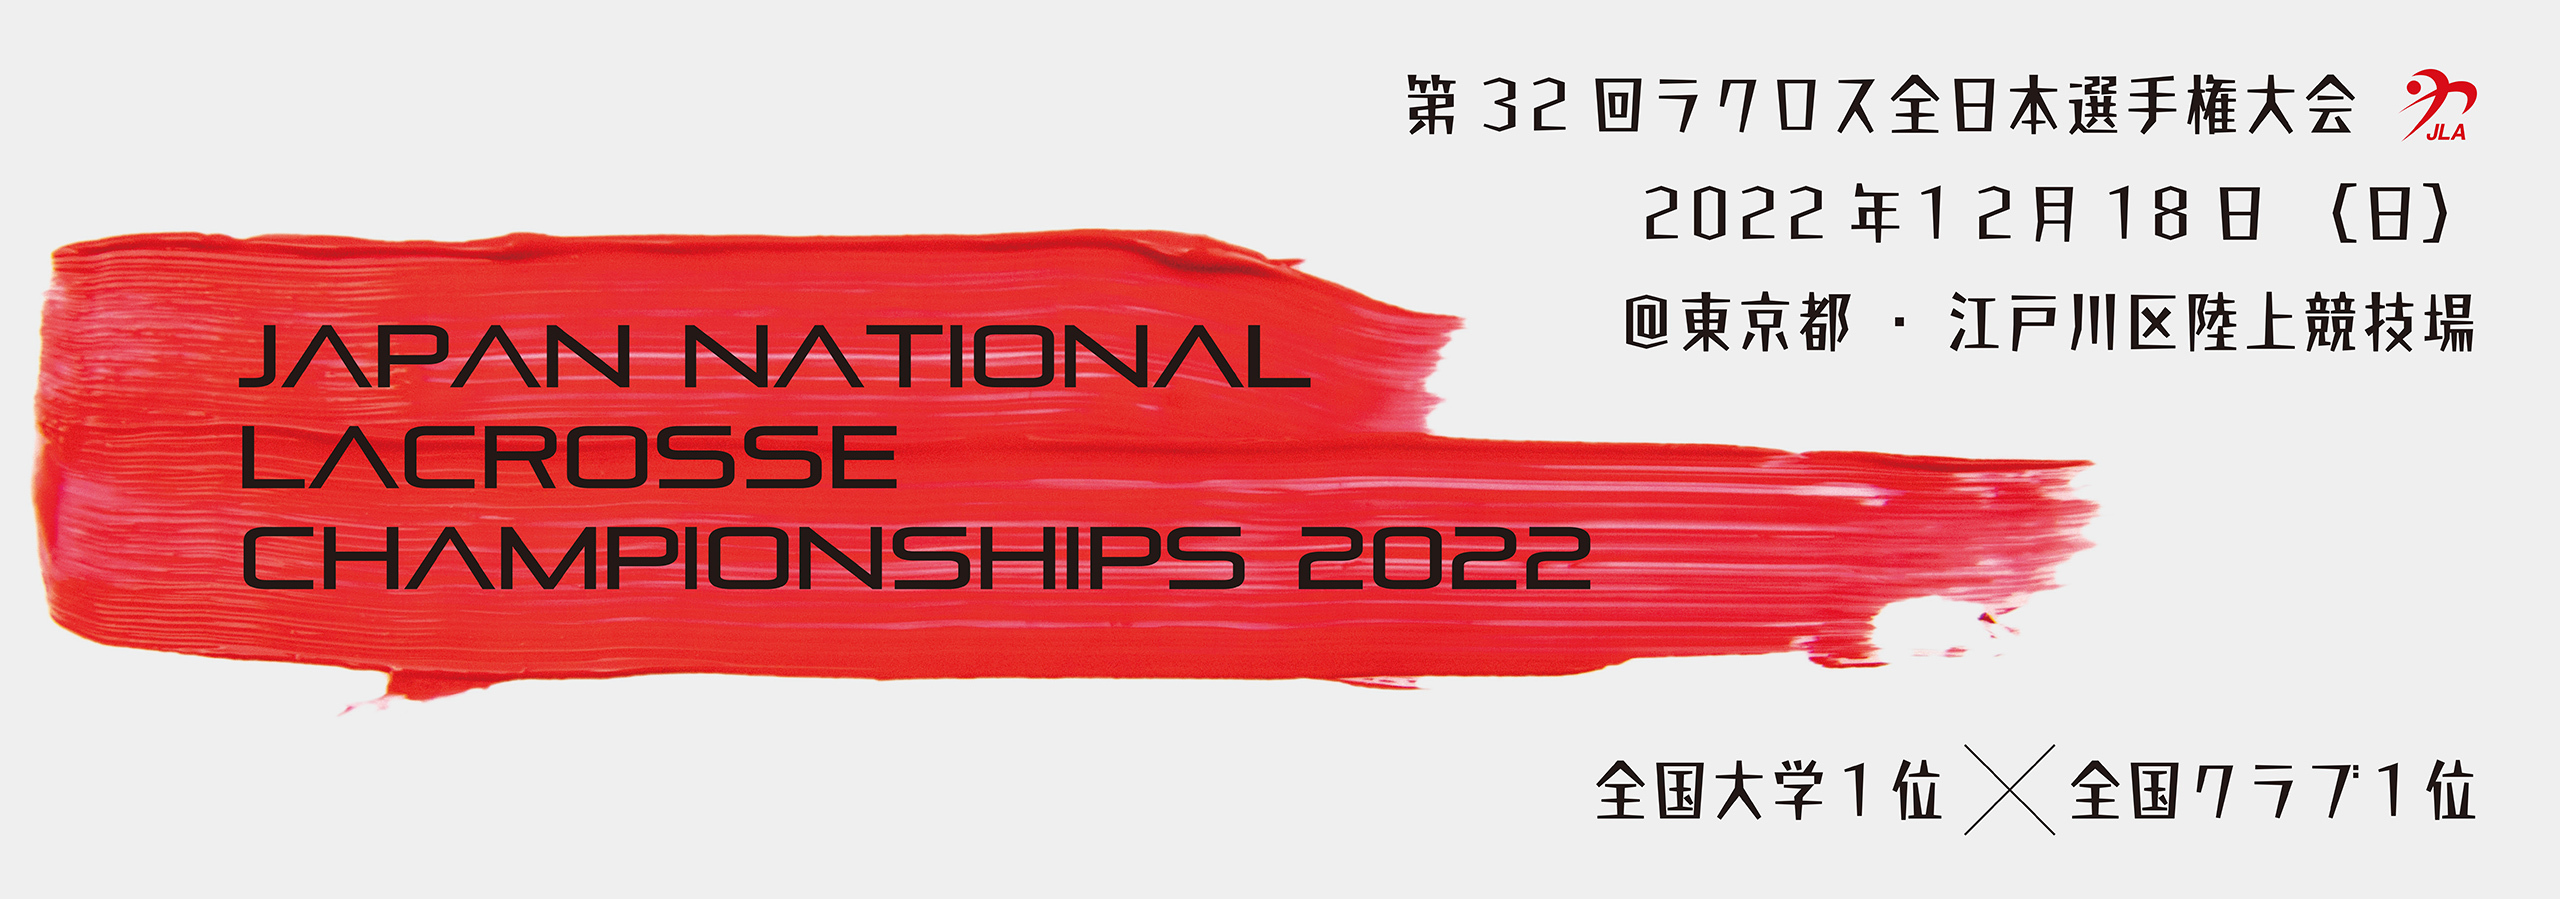 第32回ラクロス全日本選手権大会